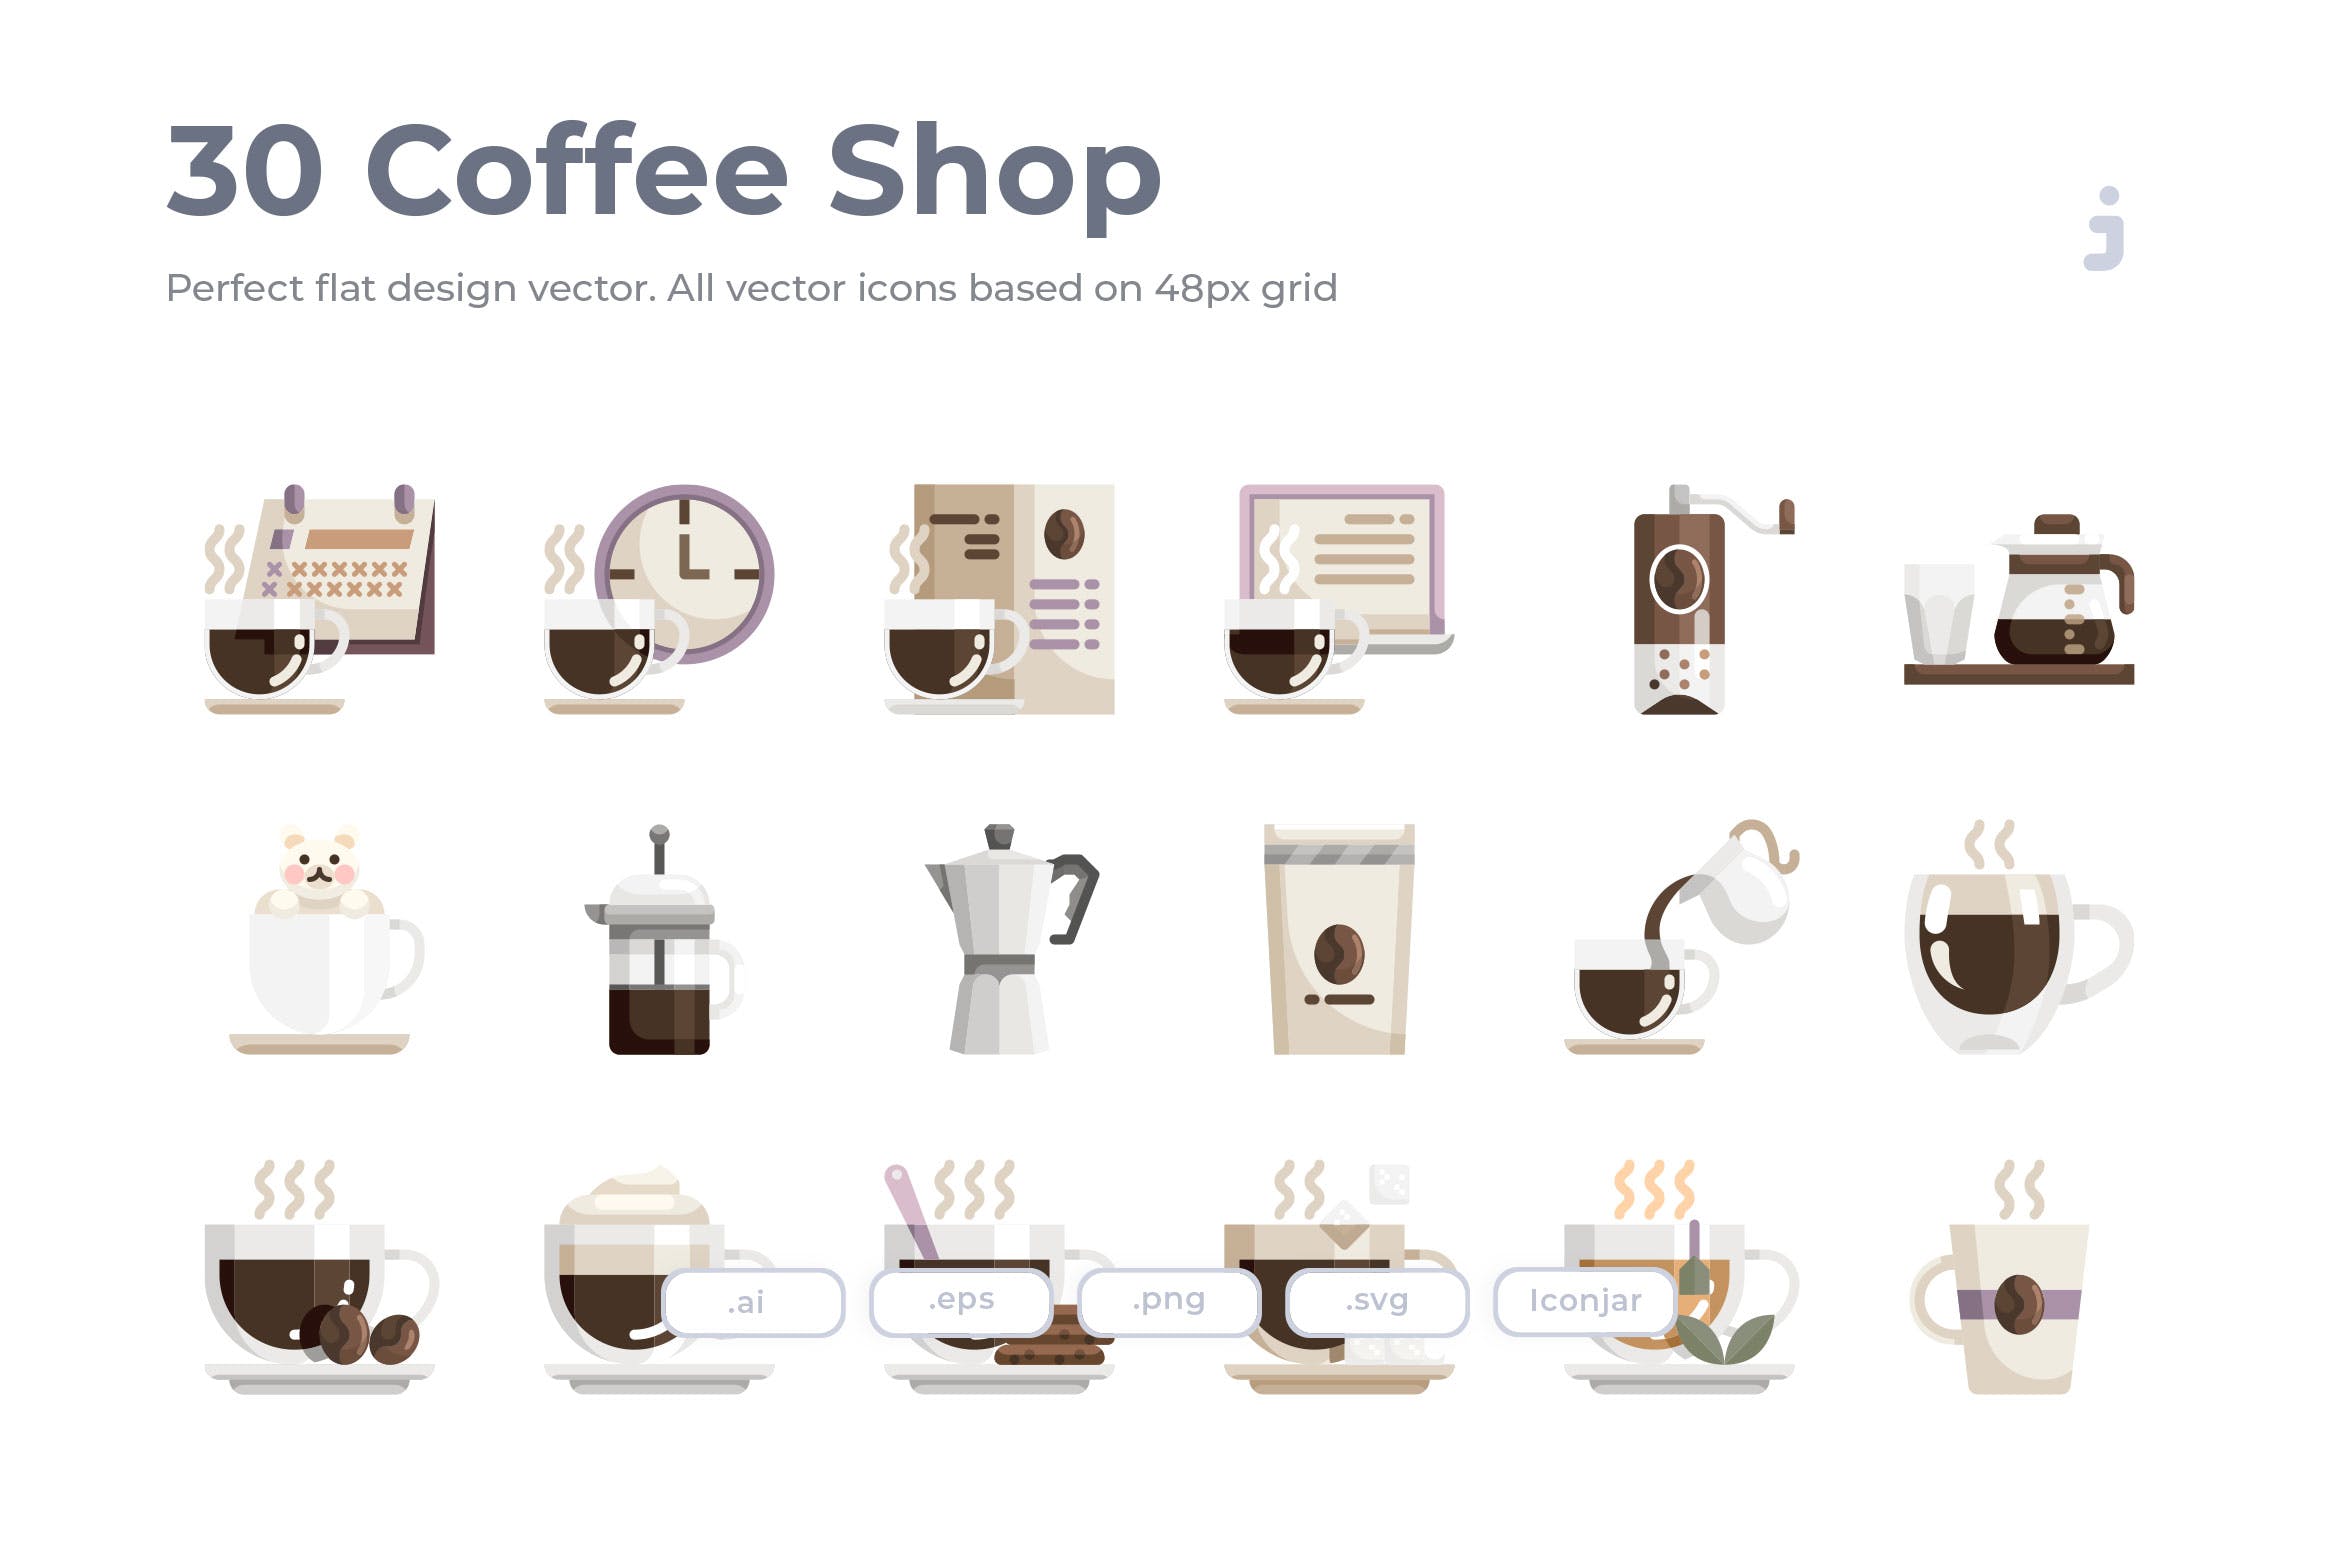 30枚咖啡/咖啡店扁平设计风格矢量素材库精选图标素材 30 Coffee Shop Icons – Flat插图